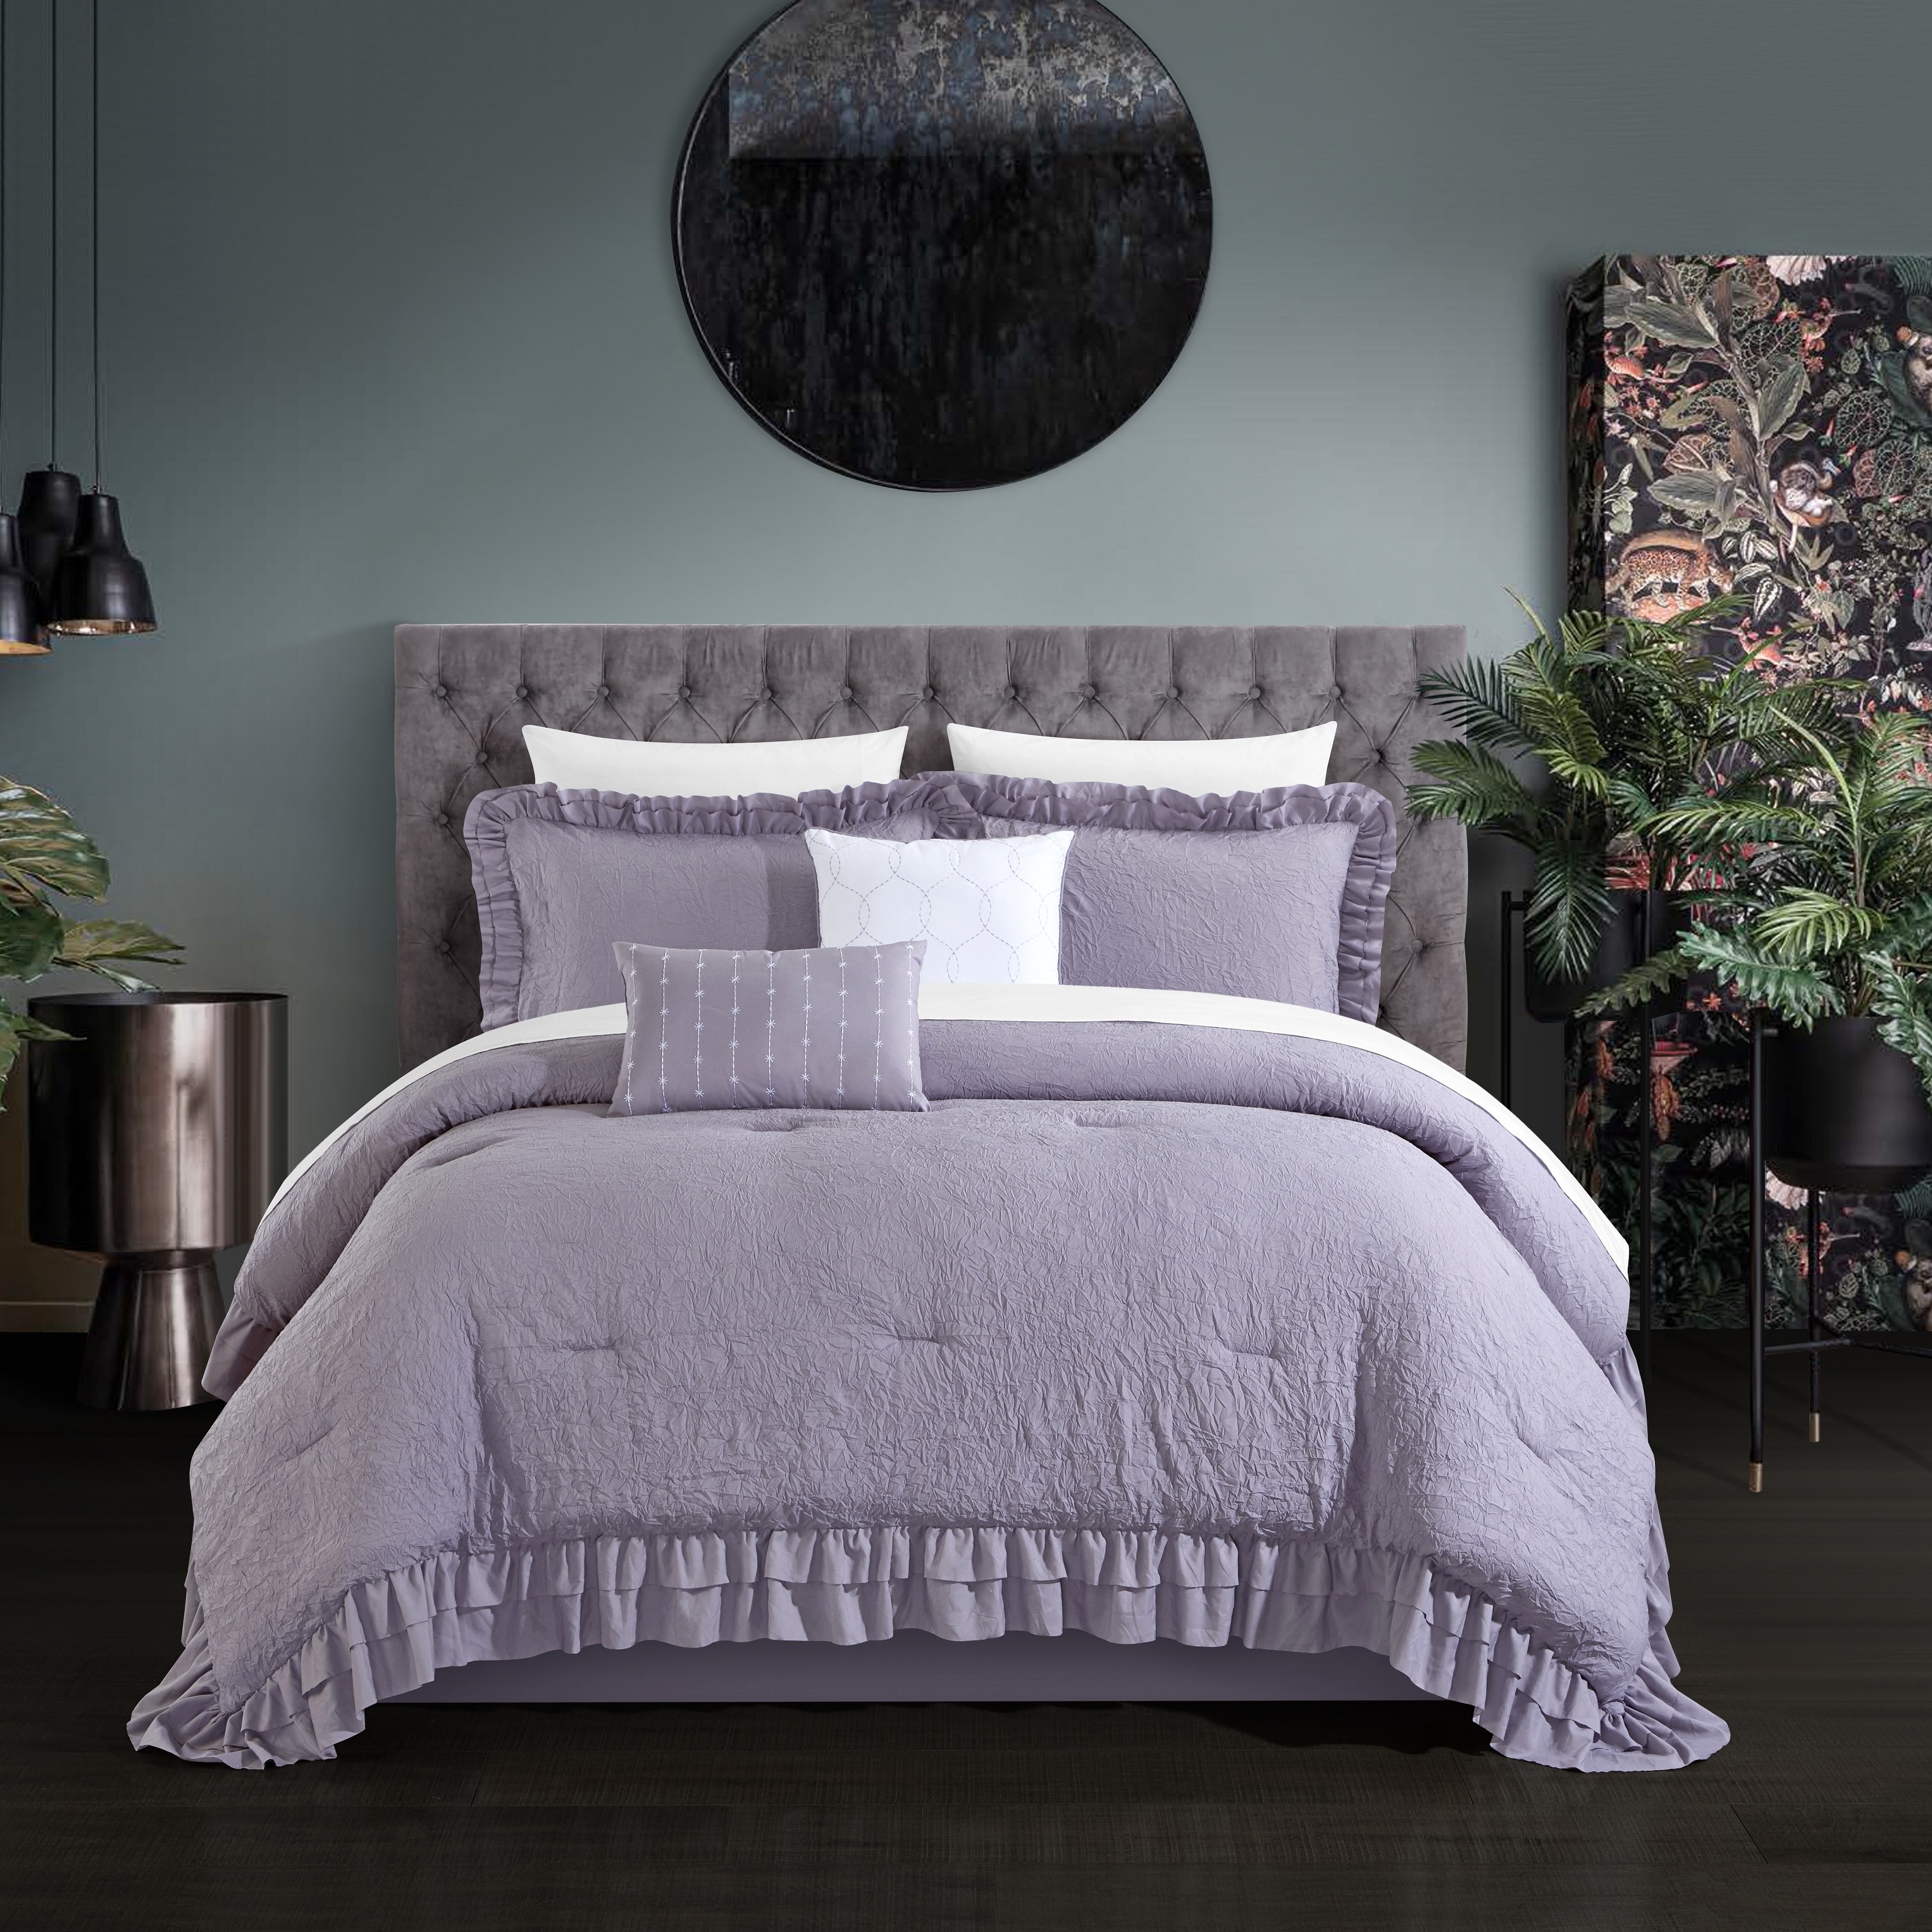 5 Piece Kensley Comforter Set Washed Crinkle Ruffled Flange Border Design Bedding - Lavender, King